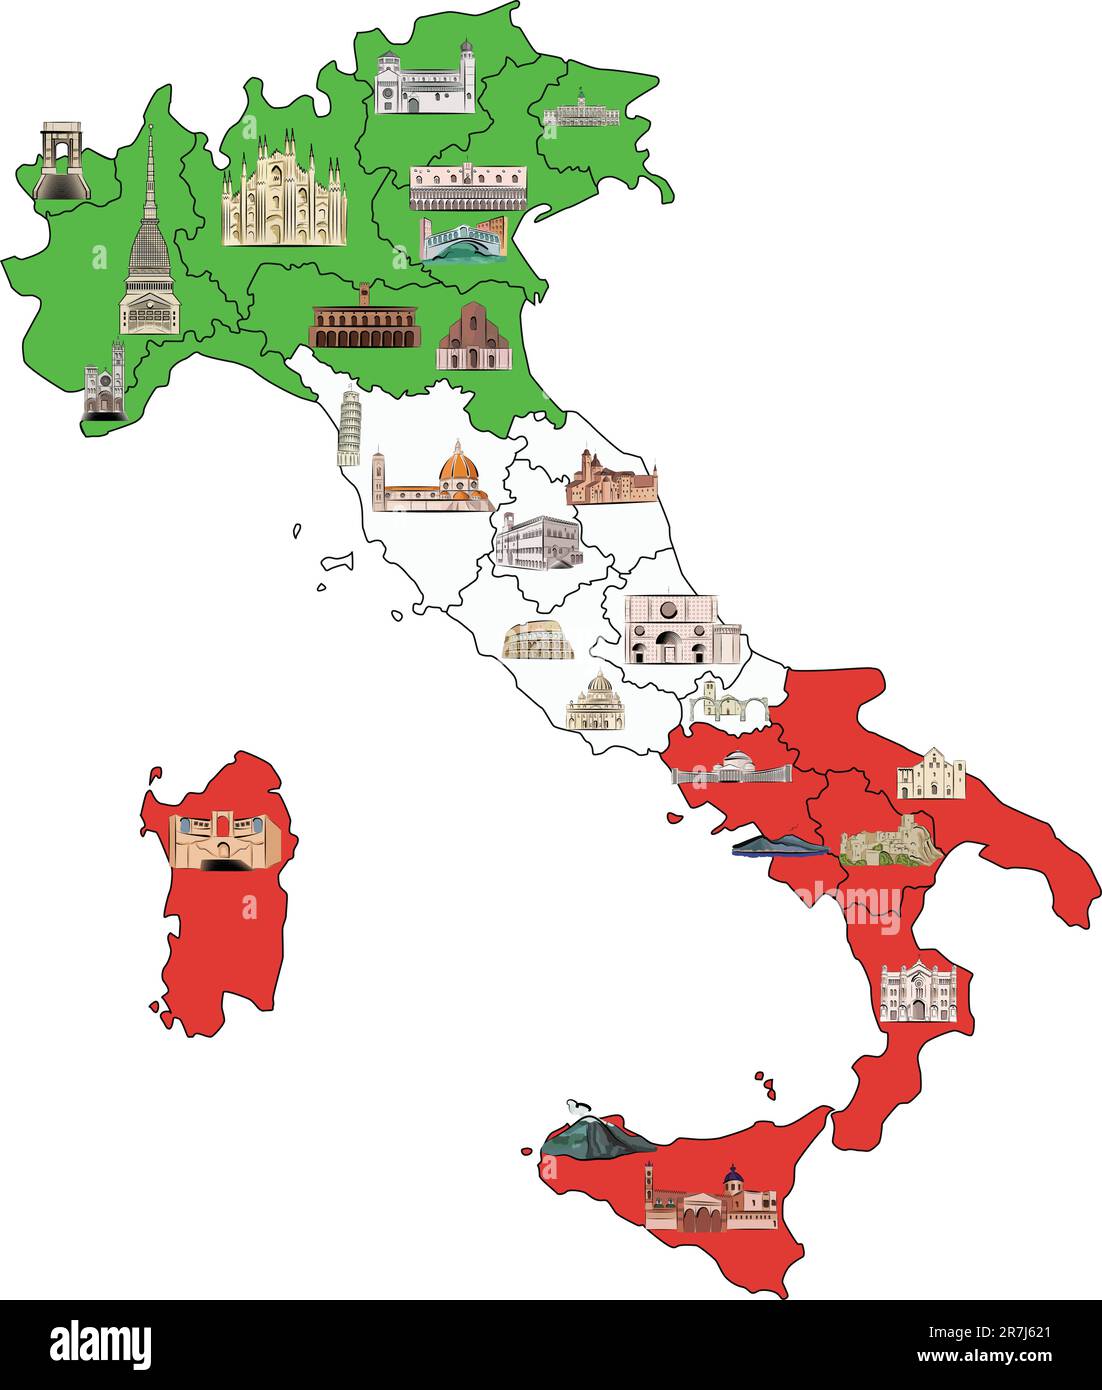 Karte von Italien, unterteilt nach Regionen mit den berühmtesten Sehenswürdigkeiten in jeder. Bilder im Aquarellstil gezeichnet. Vektordarstellung. Stock Vektor